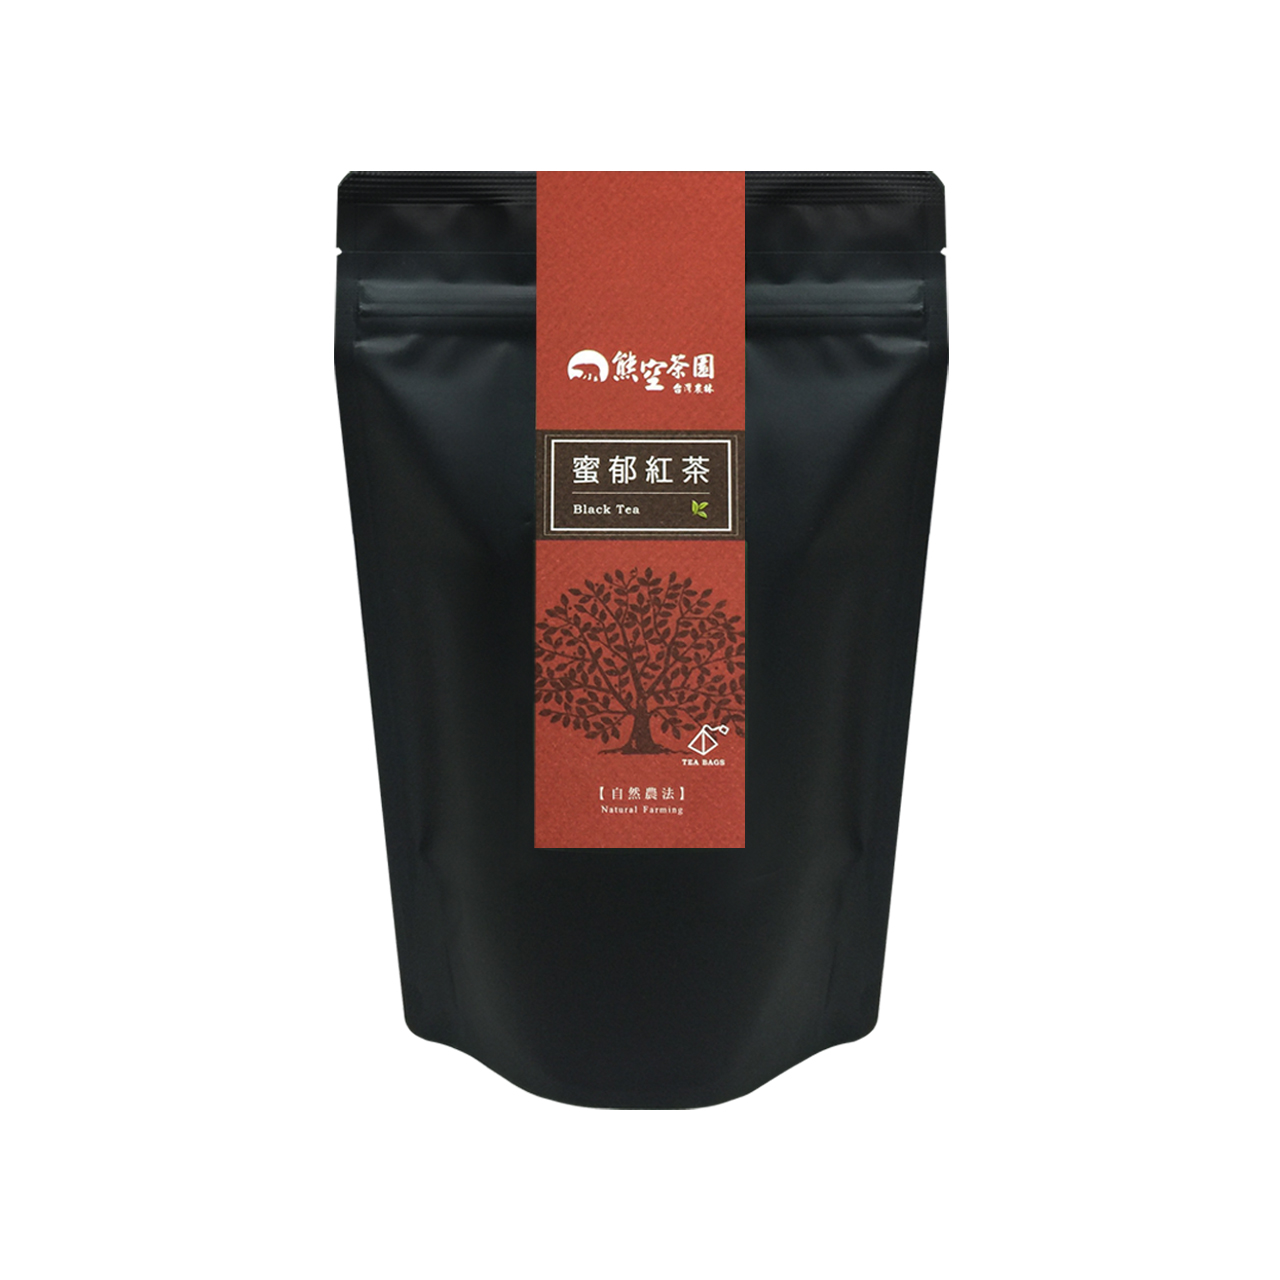 熊空-蜜郁紅茶立體茶包(自然農法)